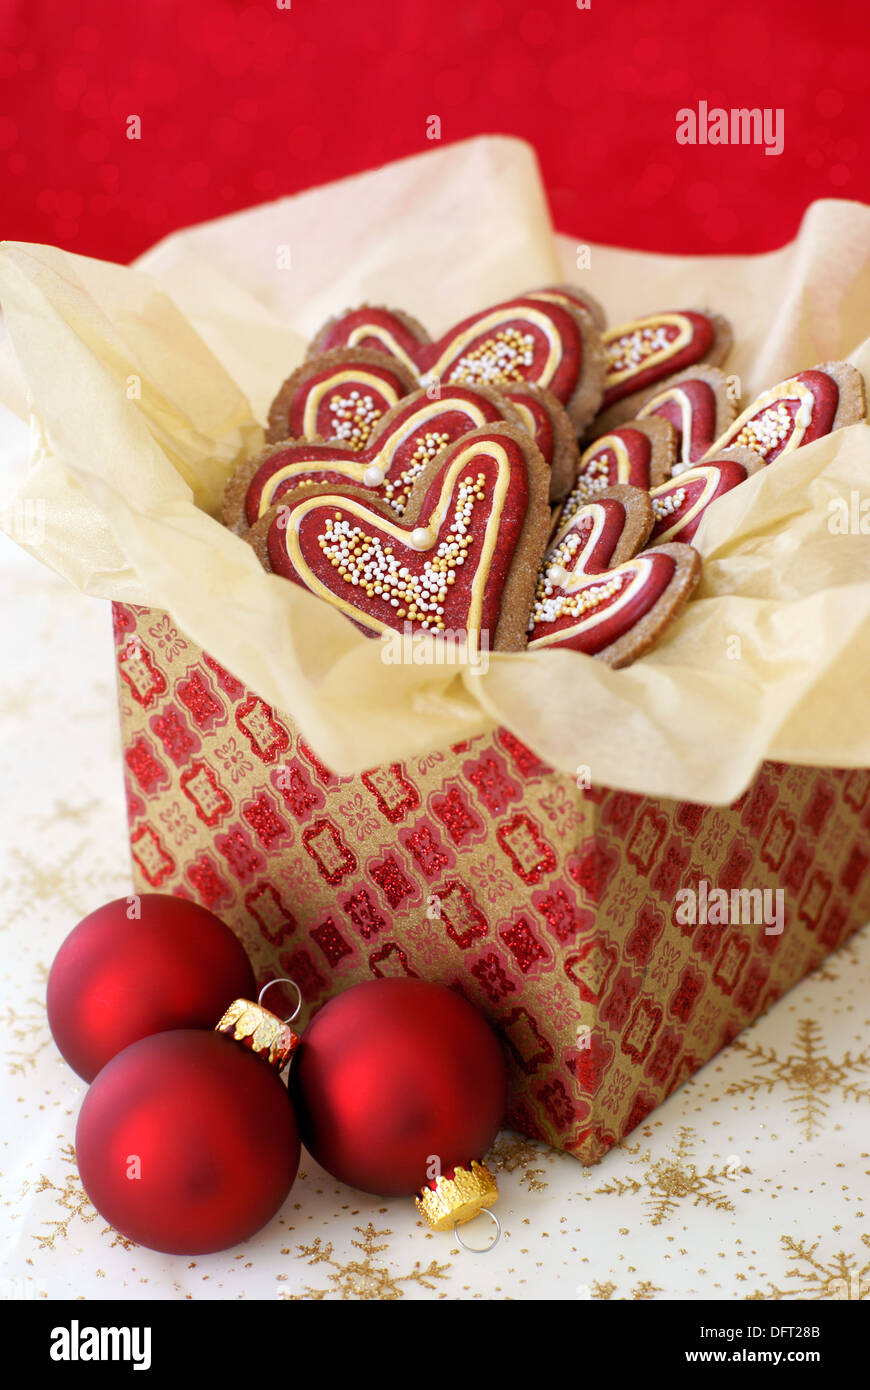 Décoration de Noël gingerbread cookies dans une boîte-cadeau Banque D'Images